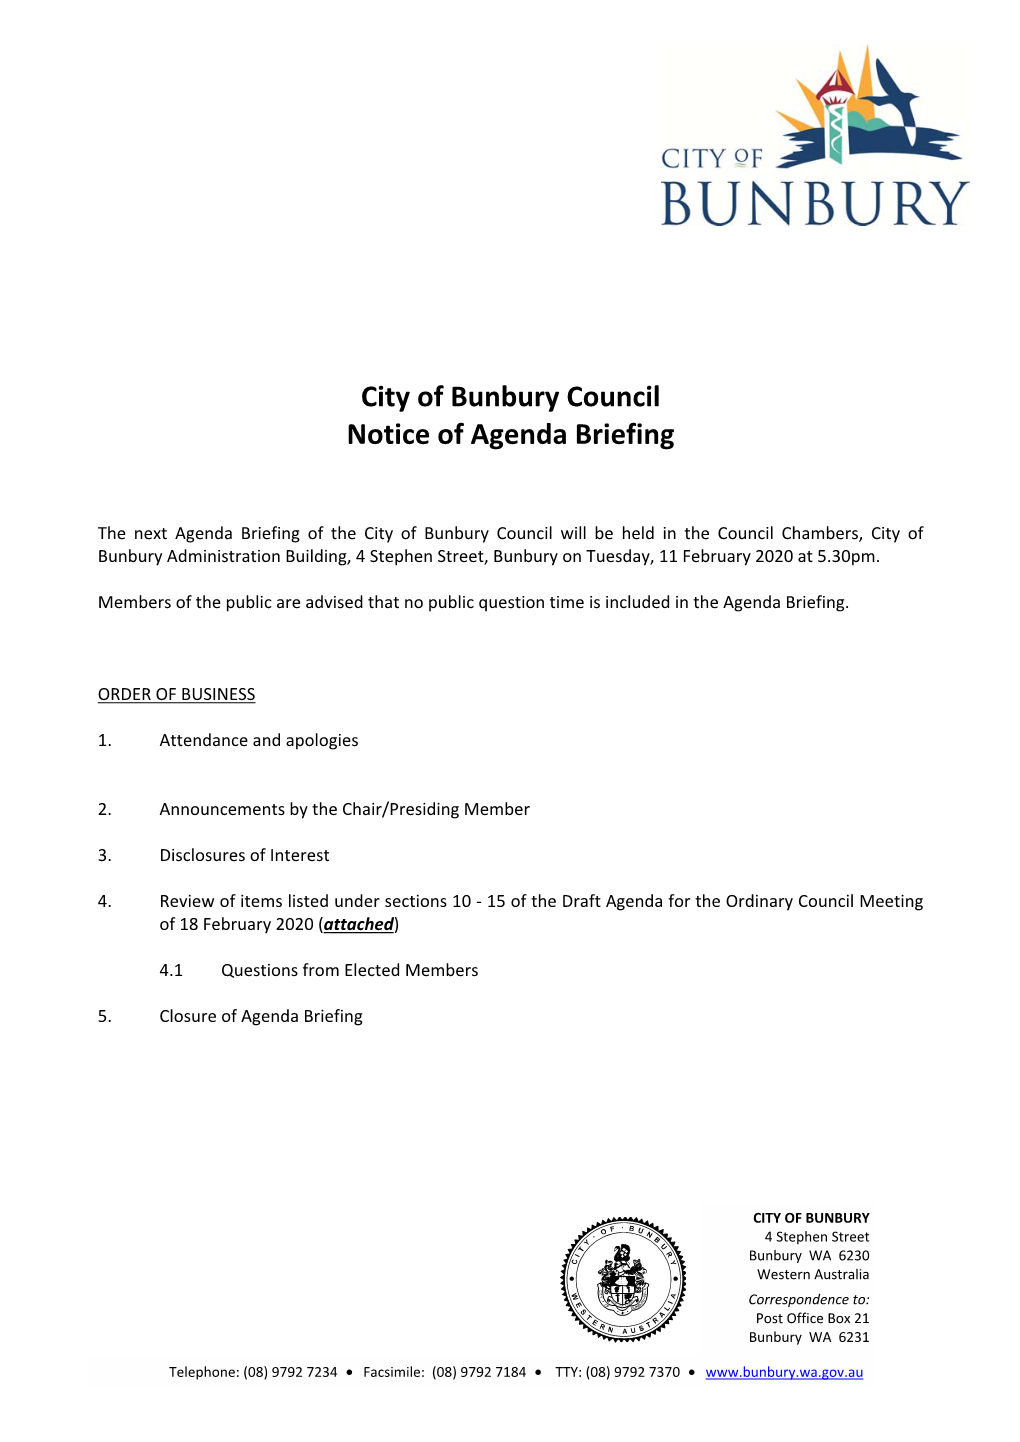 City of Bunbury Council Notice of Agenda Briefing